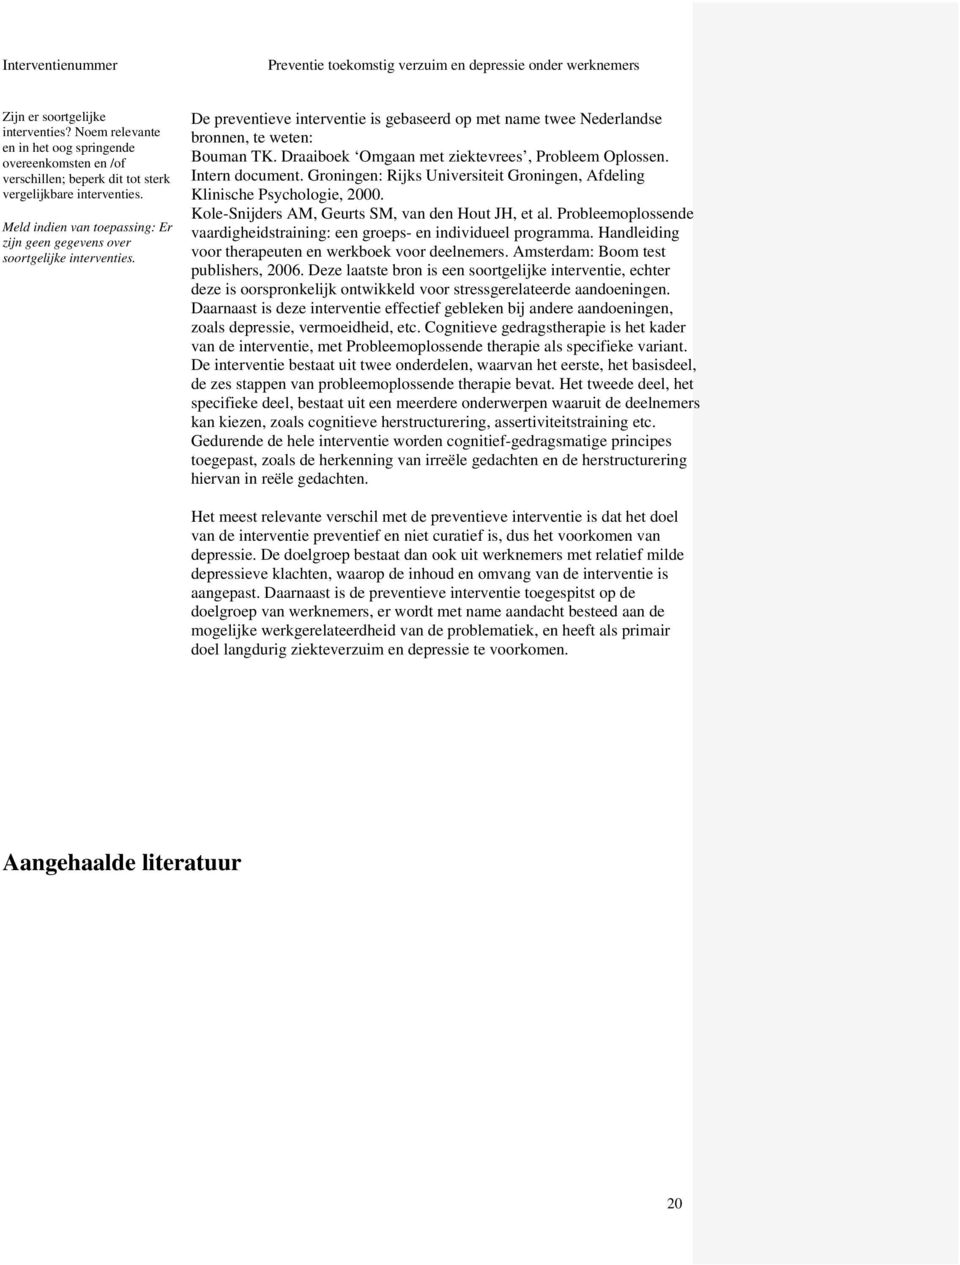 Draaiboek Omgaan met ziektevrees, Probleem Oplossen. Intern document. Groningen: Rijks Universiteit Groningen, Afdeling Klinische Psychologie, 2000.